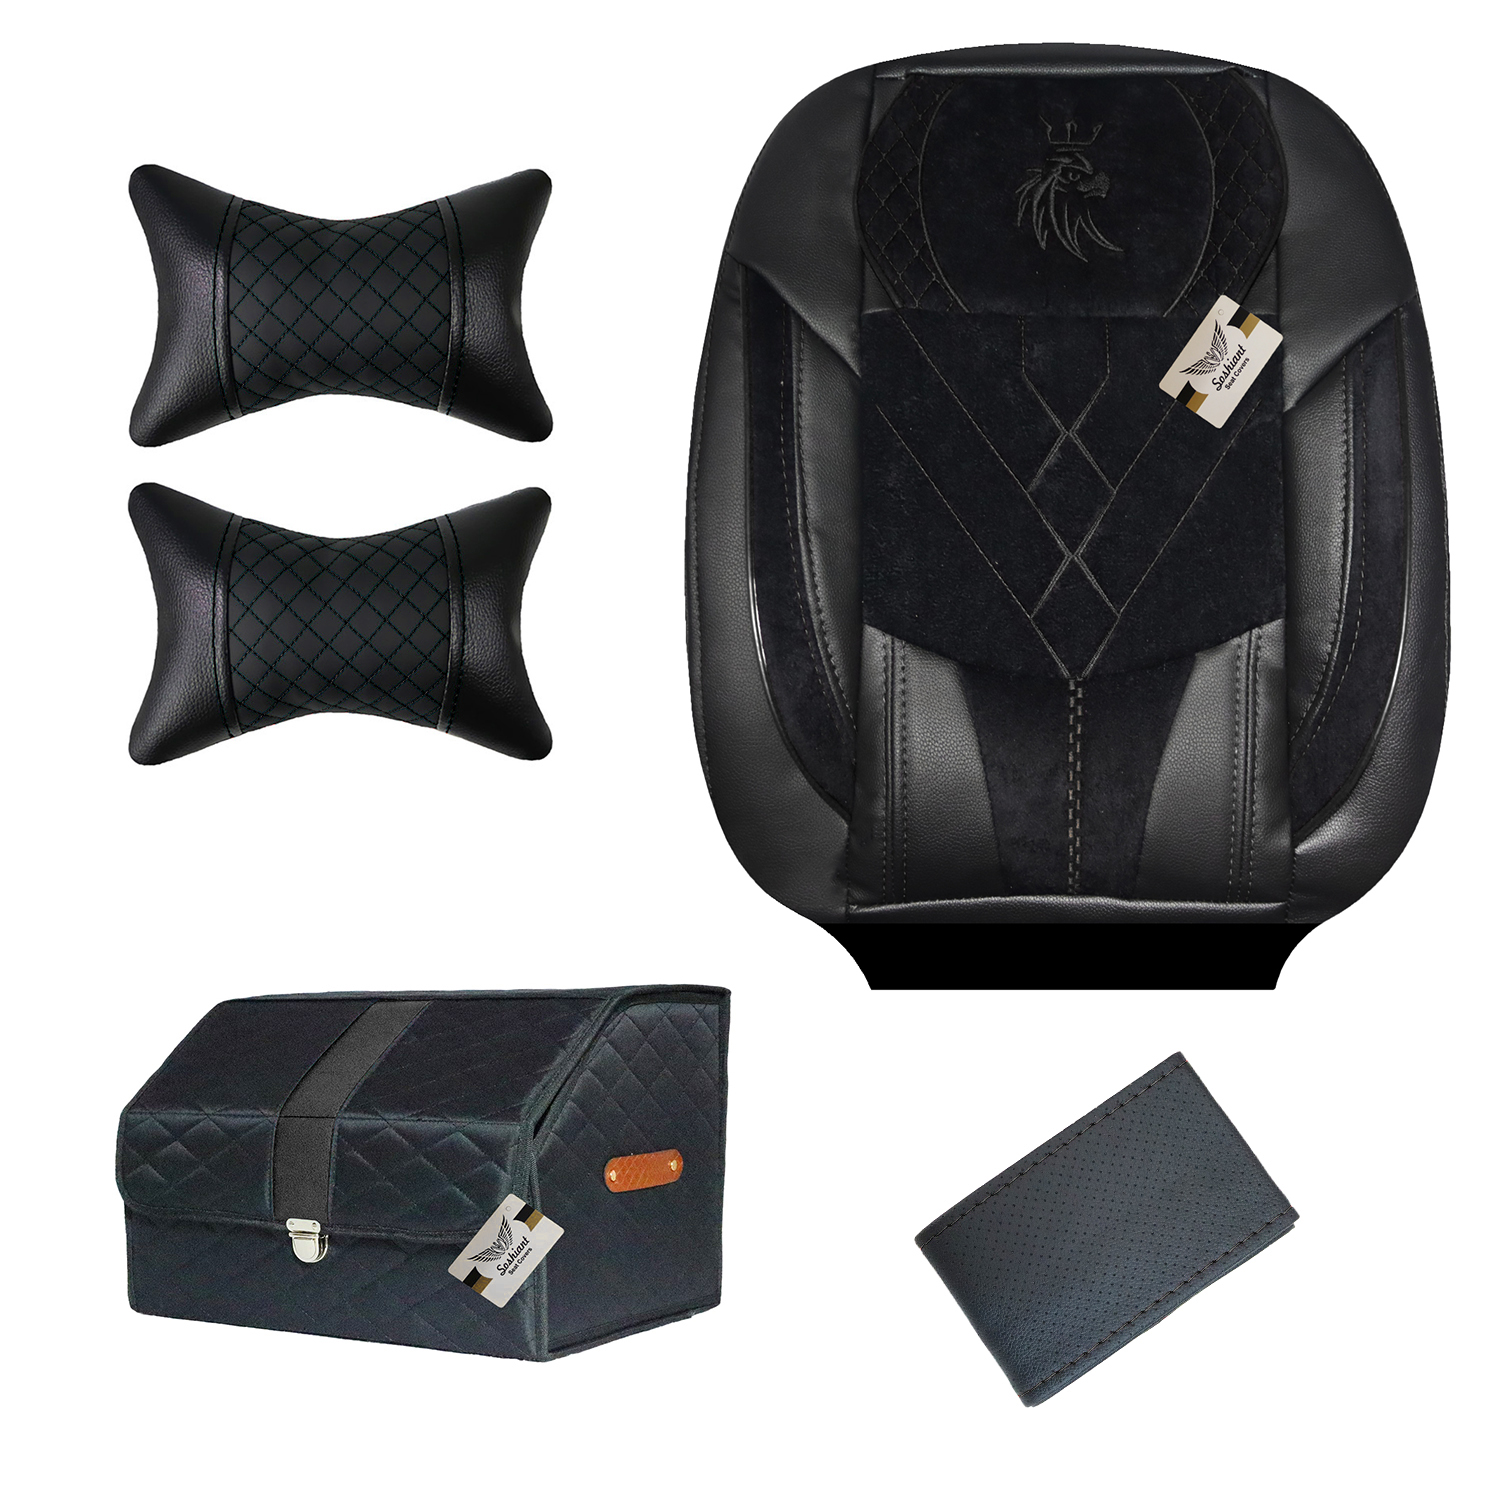 روکش صندلی خودرو سوشیانت مدل VIP مناسب برای پژو 206 به همراه پشت گردنی و جعبه و دور فرمان